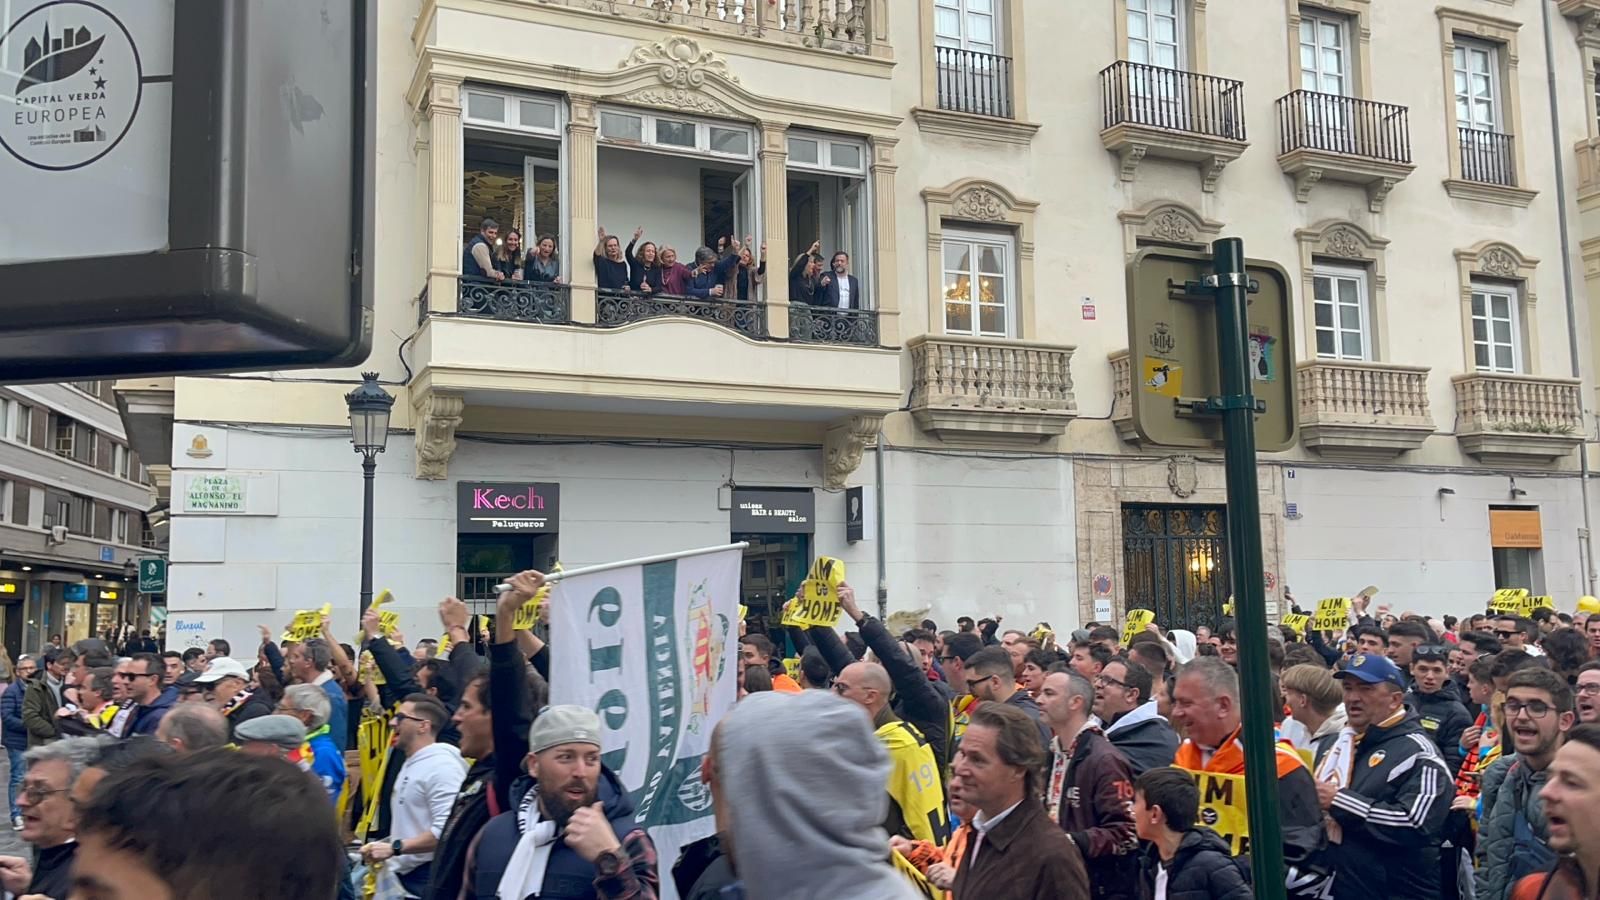 El valencianismo vuelve a manifestarse para la marcha de Lim